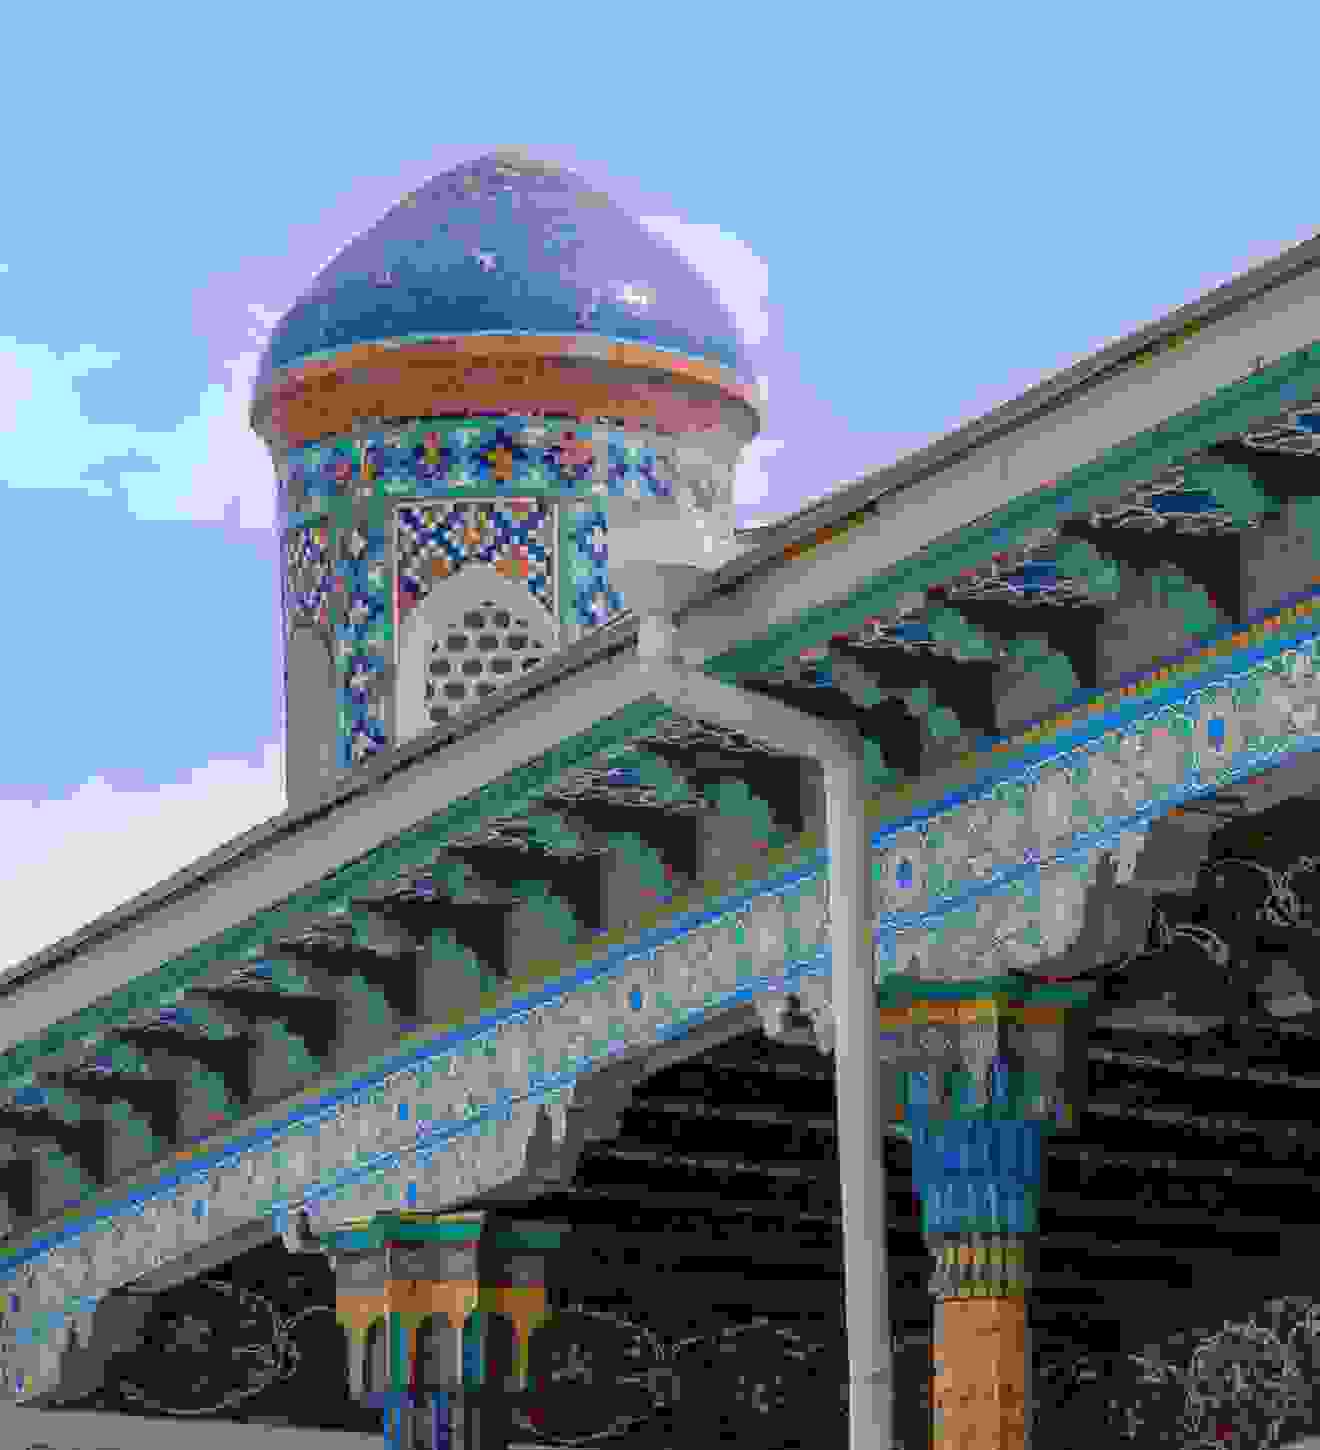 City in Uzbekistan